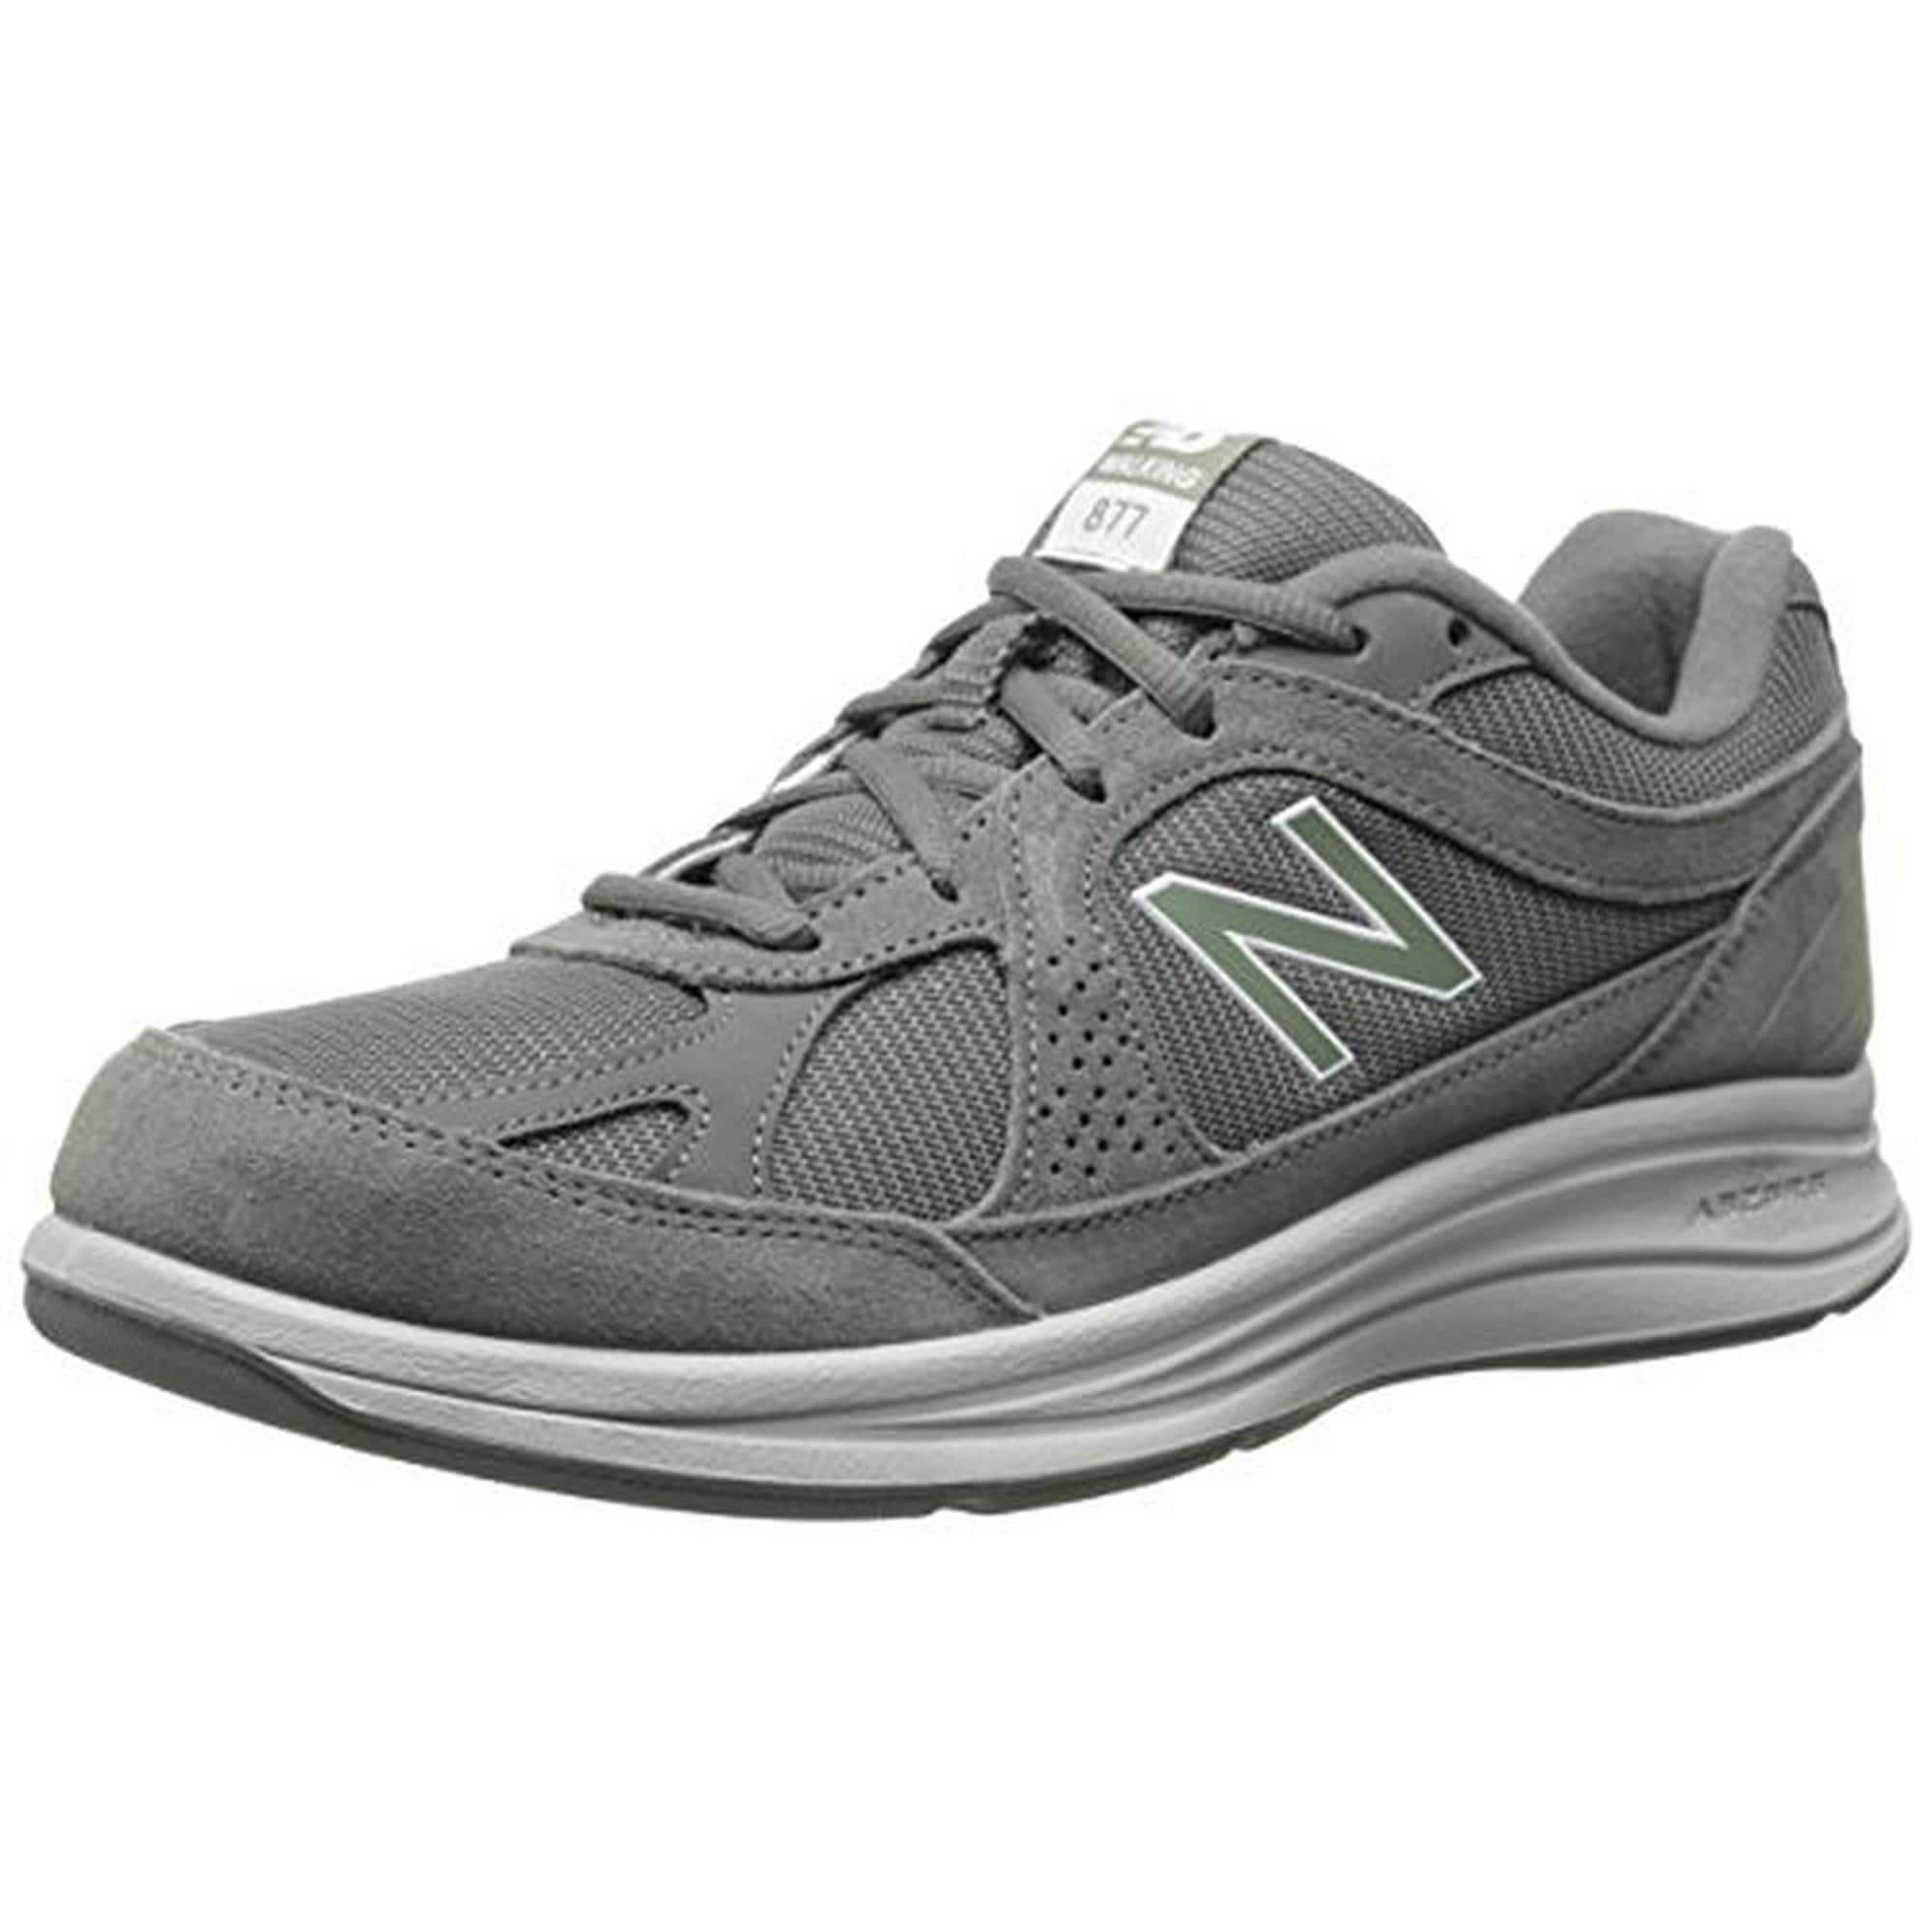 New Balance Mens 877 Walking Shoes 